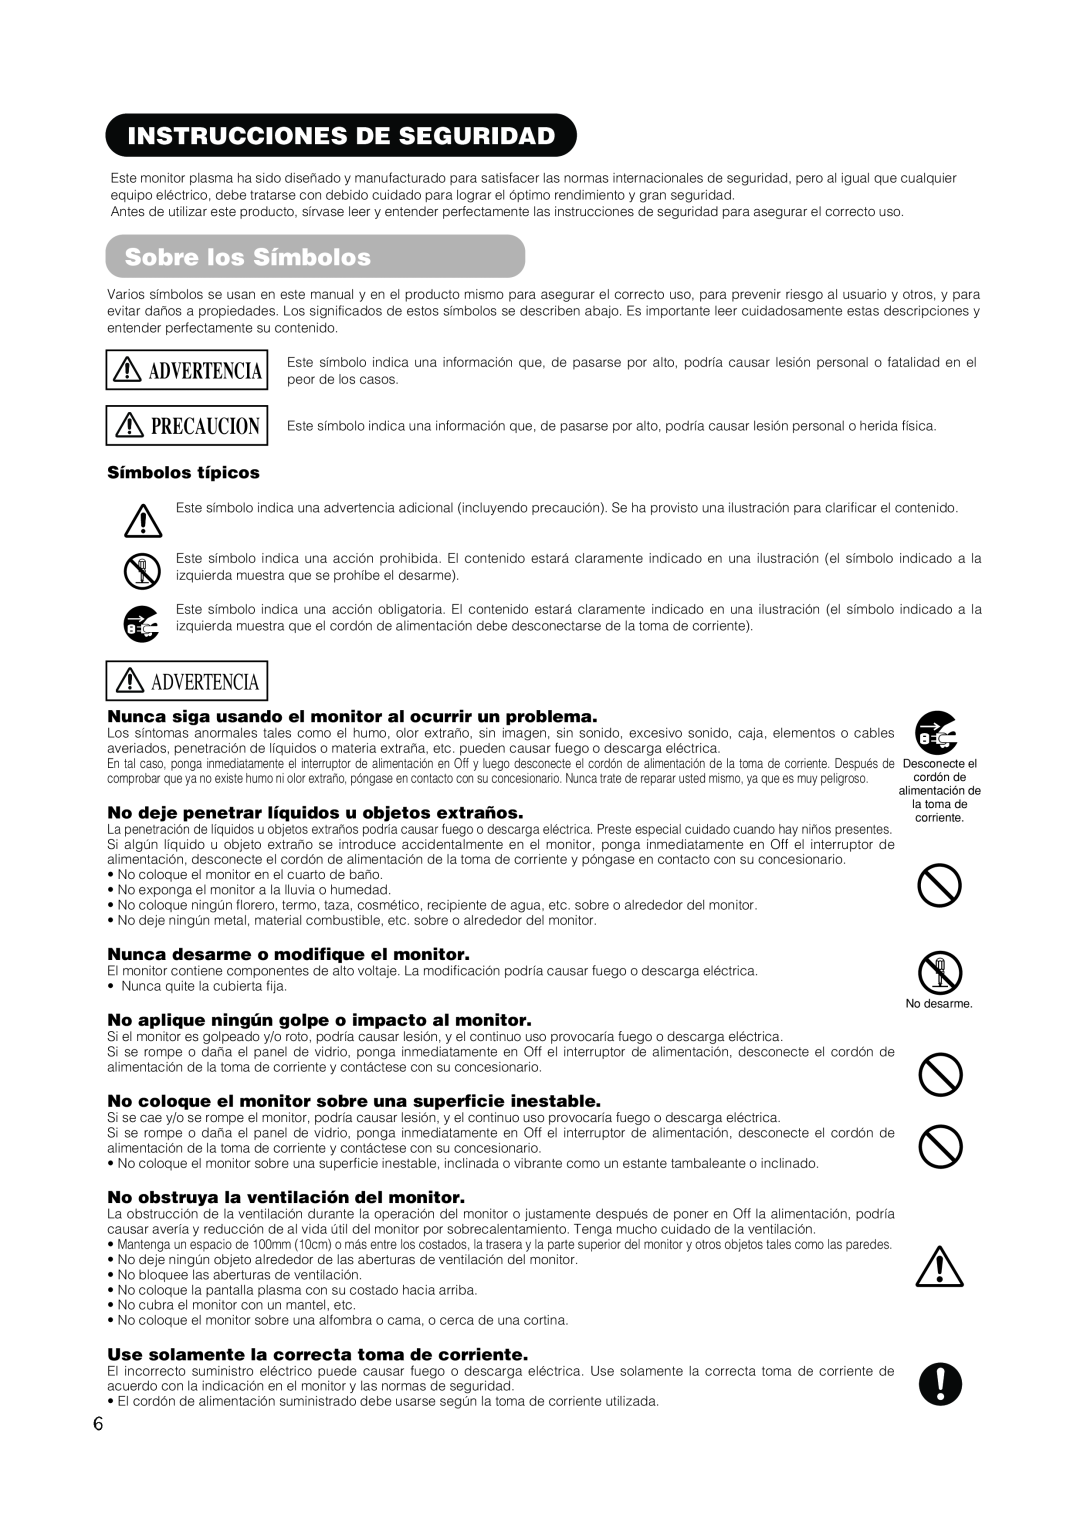 Hitachi PW1A user manual Instrucciones De Seguridad, Sobre los Símbolos, Advertencia, Precaucion, Símbolos típicos 